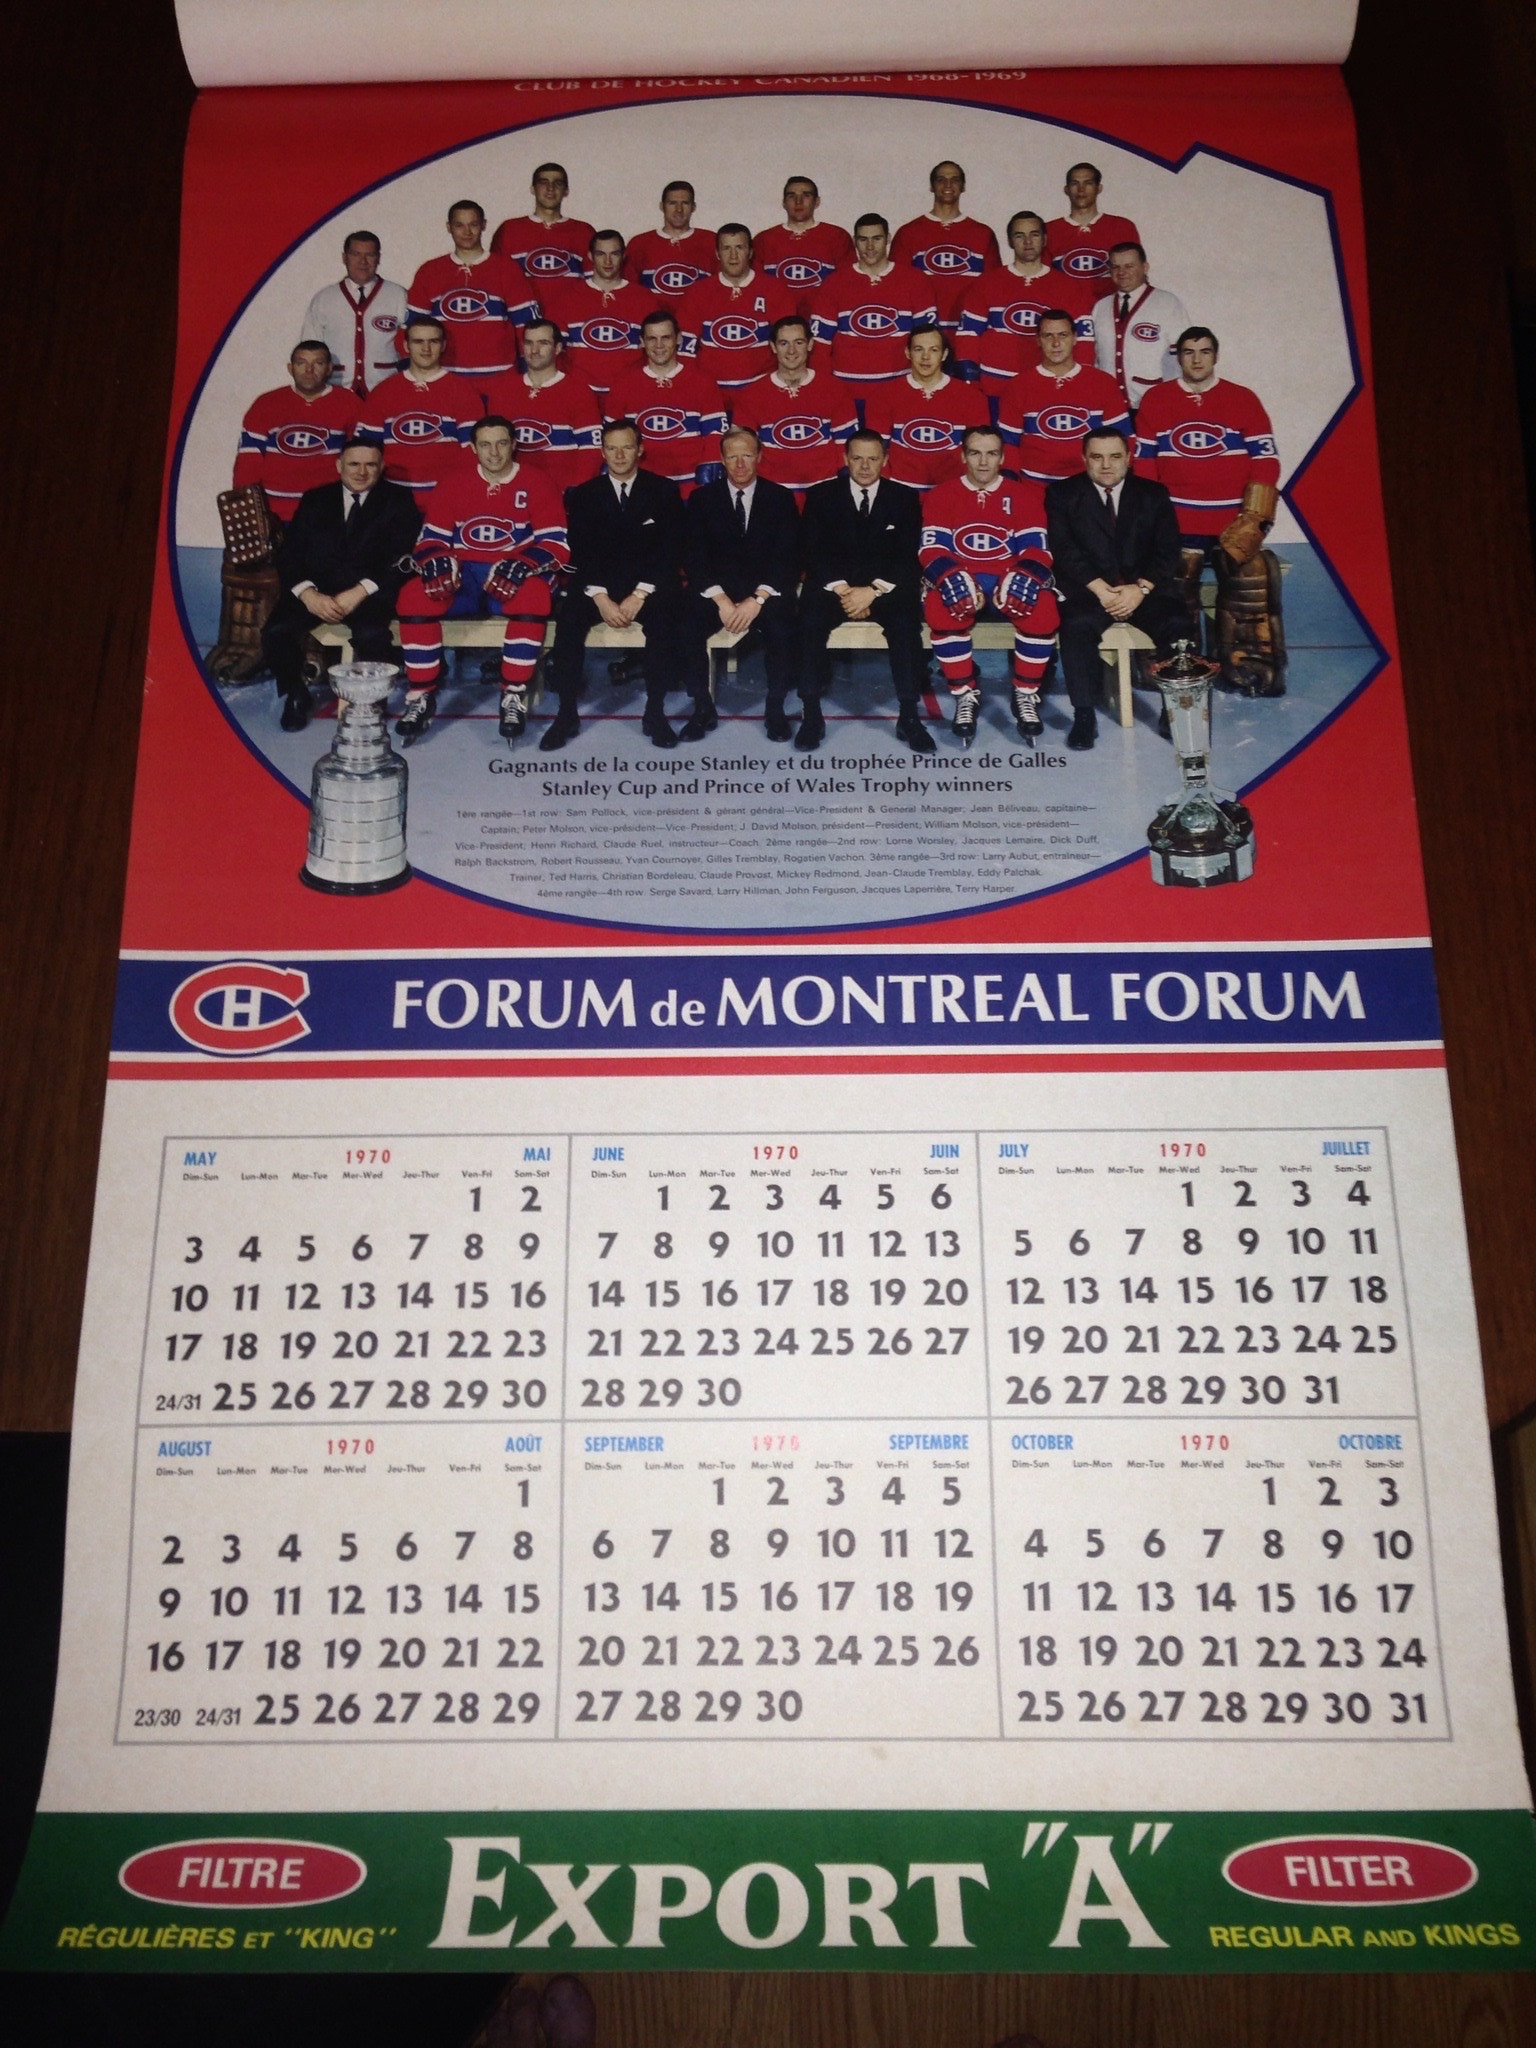 nhl canadiens calendar